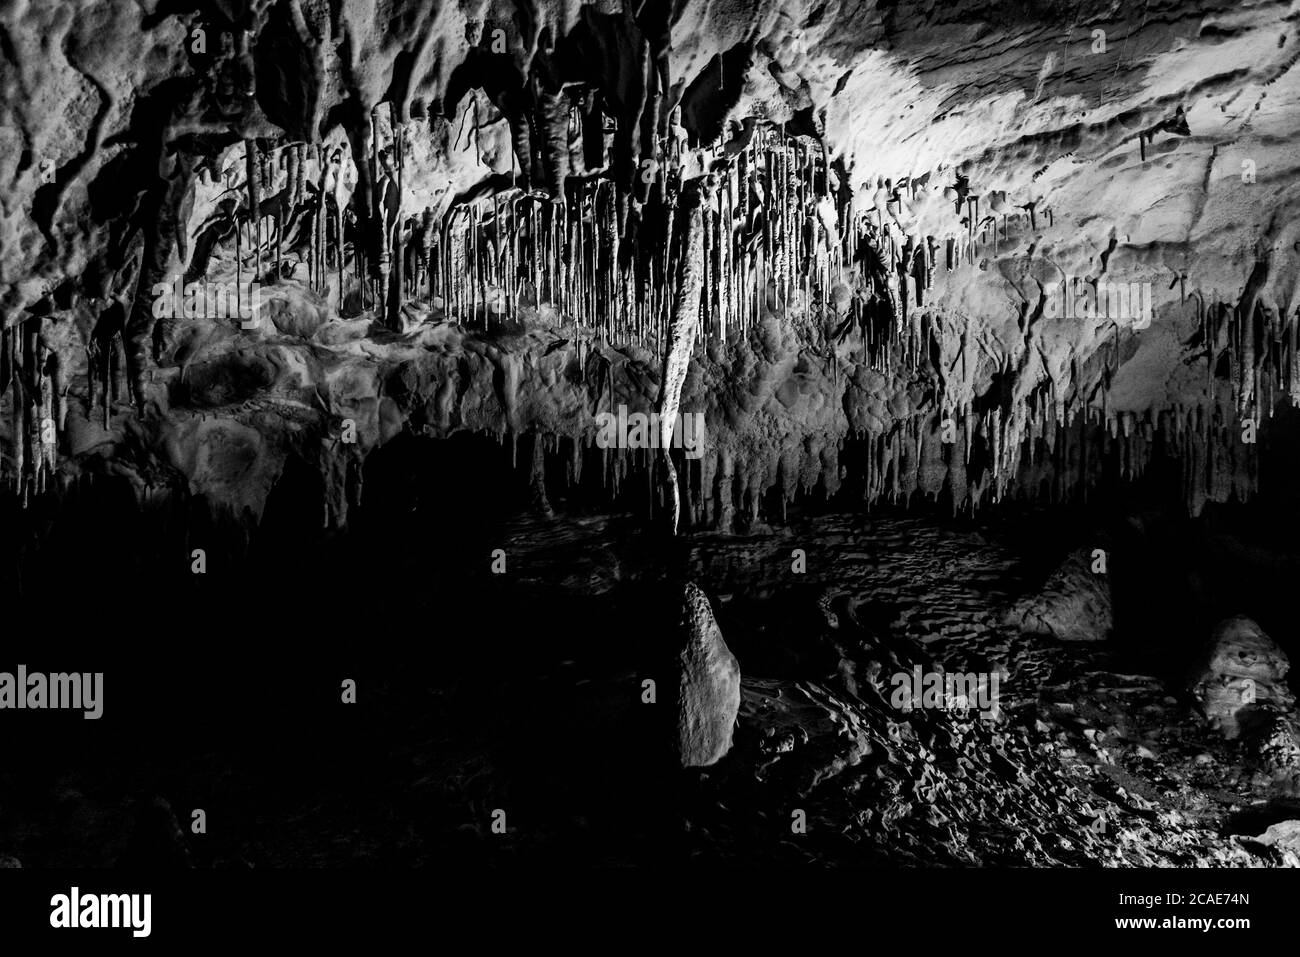 Illuminate pittoresche formazioni rocciose carsiche nella grotta di Balcarka, Carso Moravo, Ceco: Moravsky Kras, Repubblica Ceca. Immagine in bianco e nero. Foto Stock